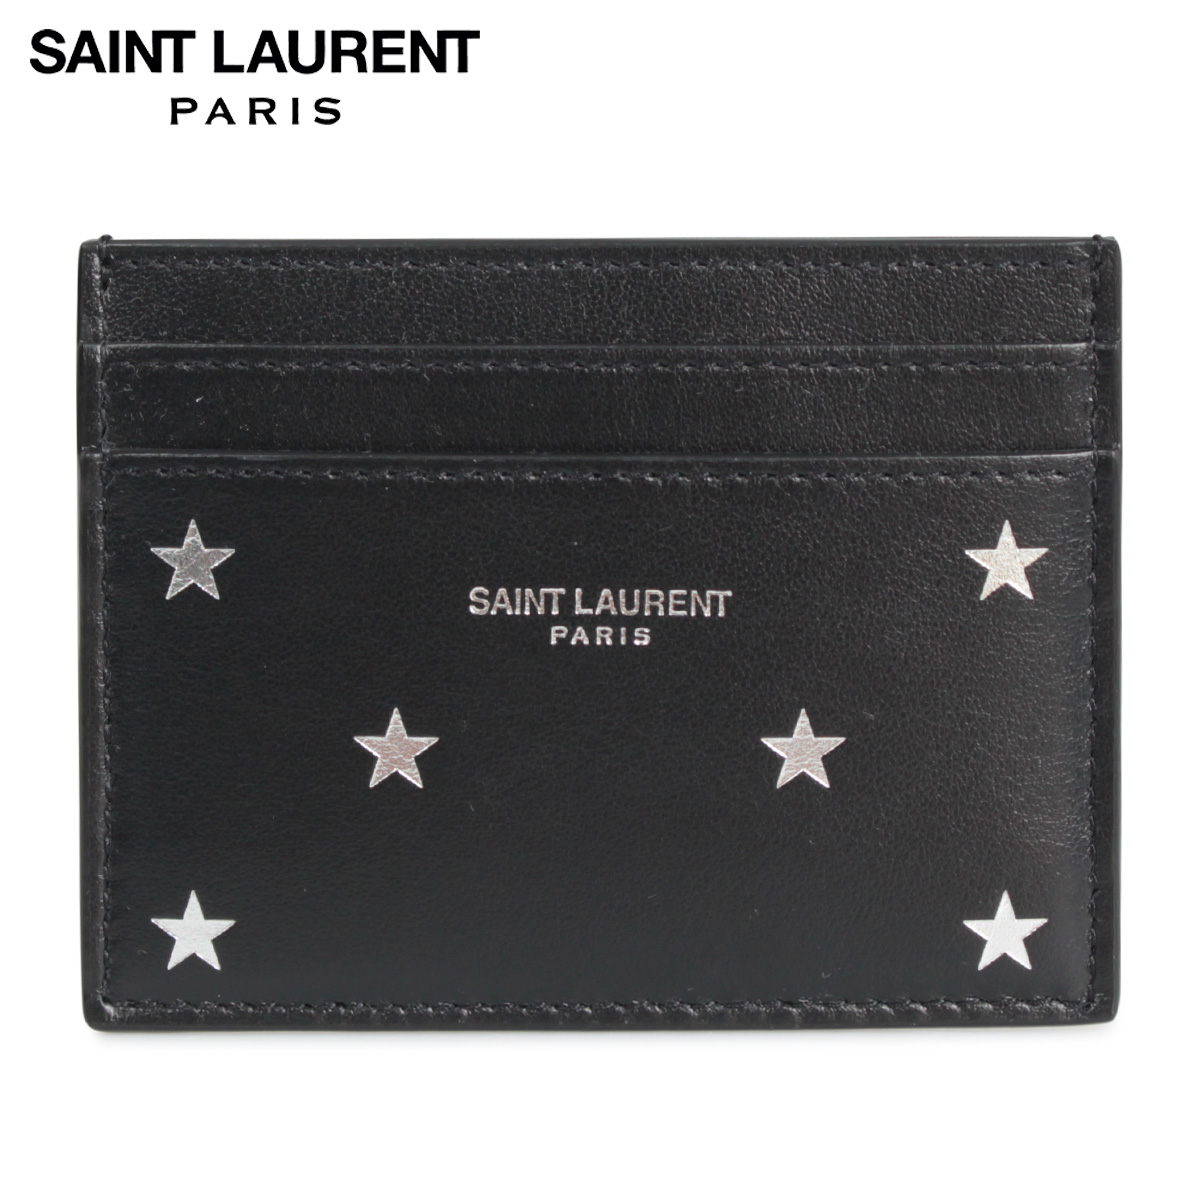 サンローラン パリ SAINT LAURENT PARIS パスケース カードケース ID